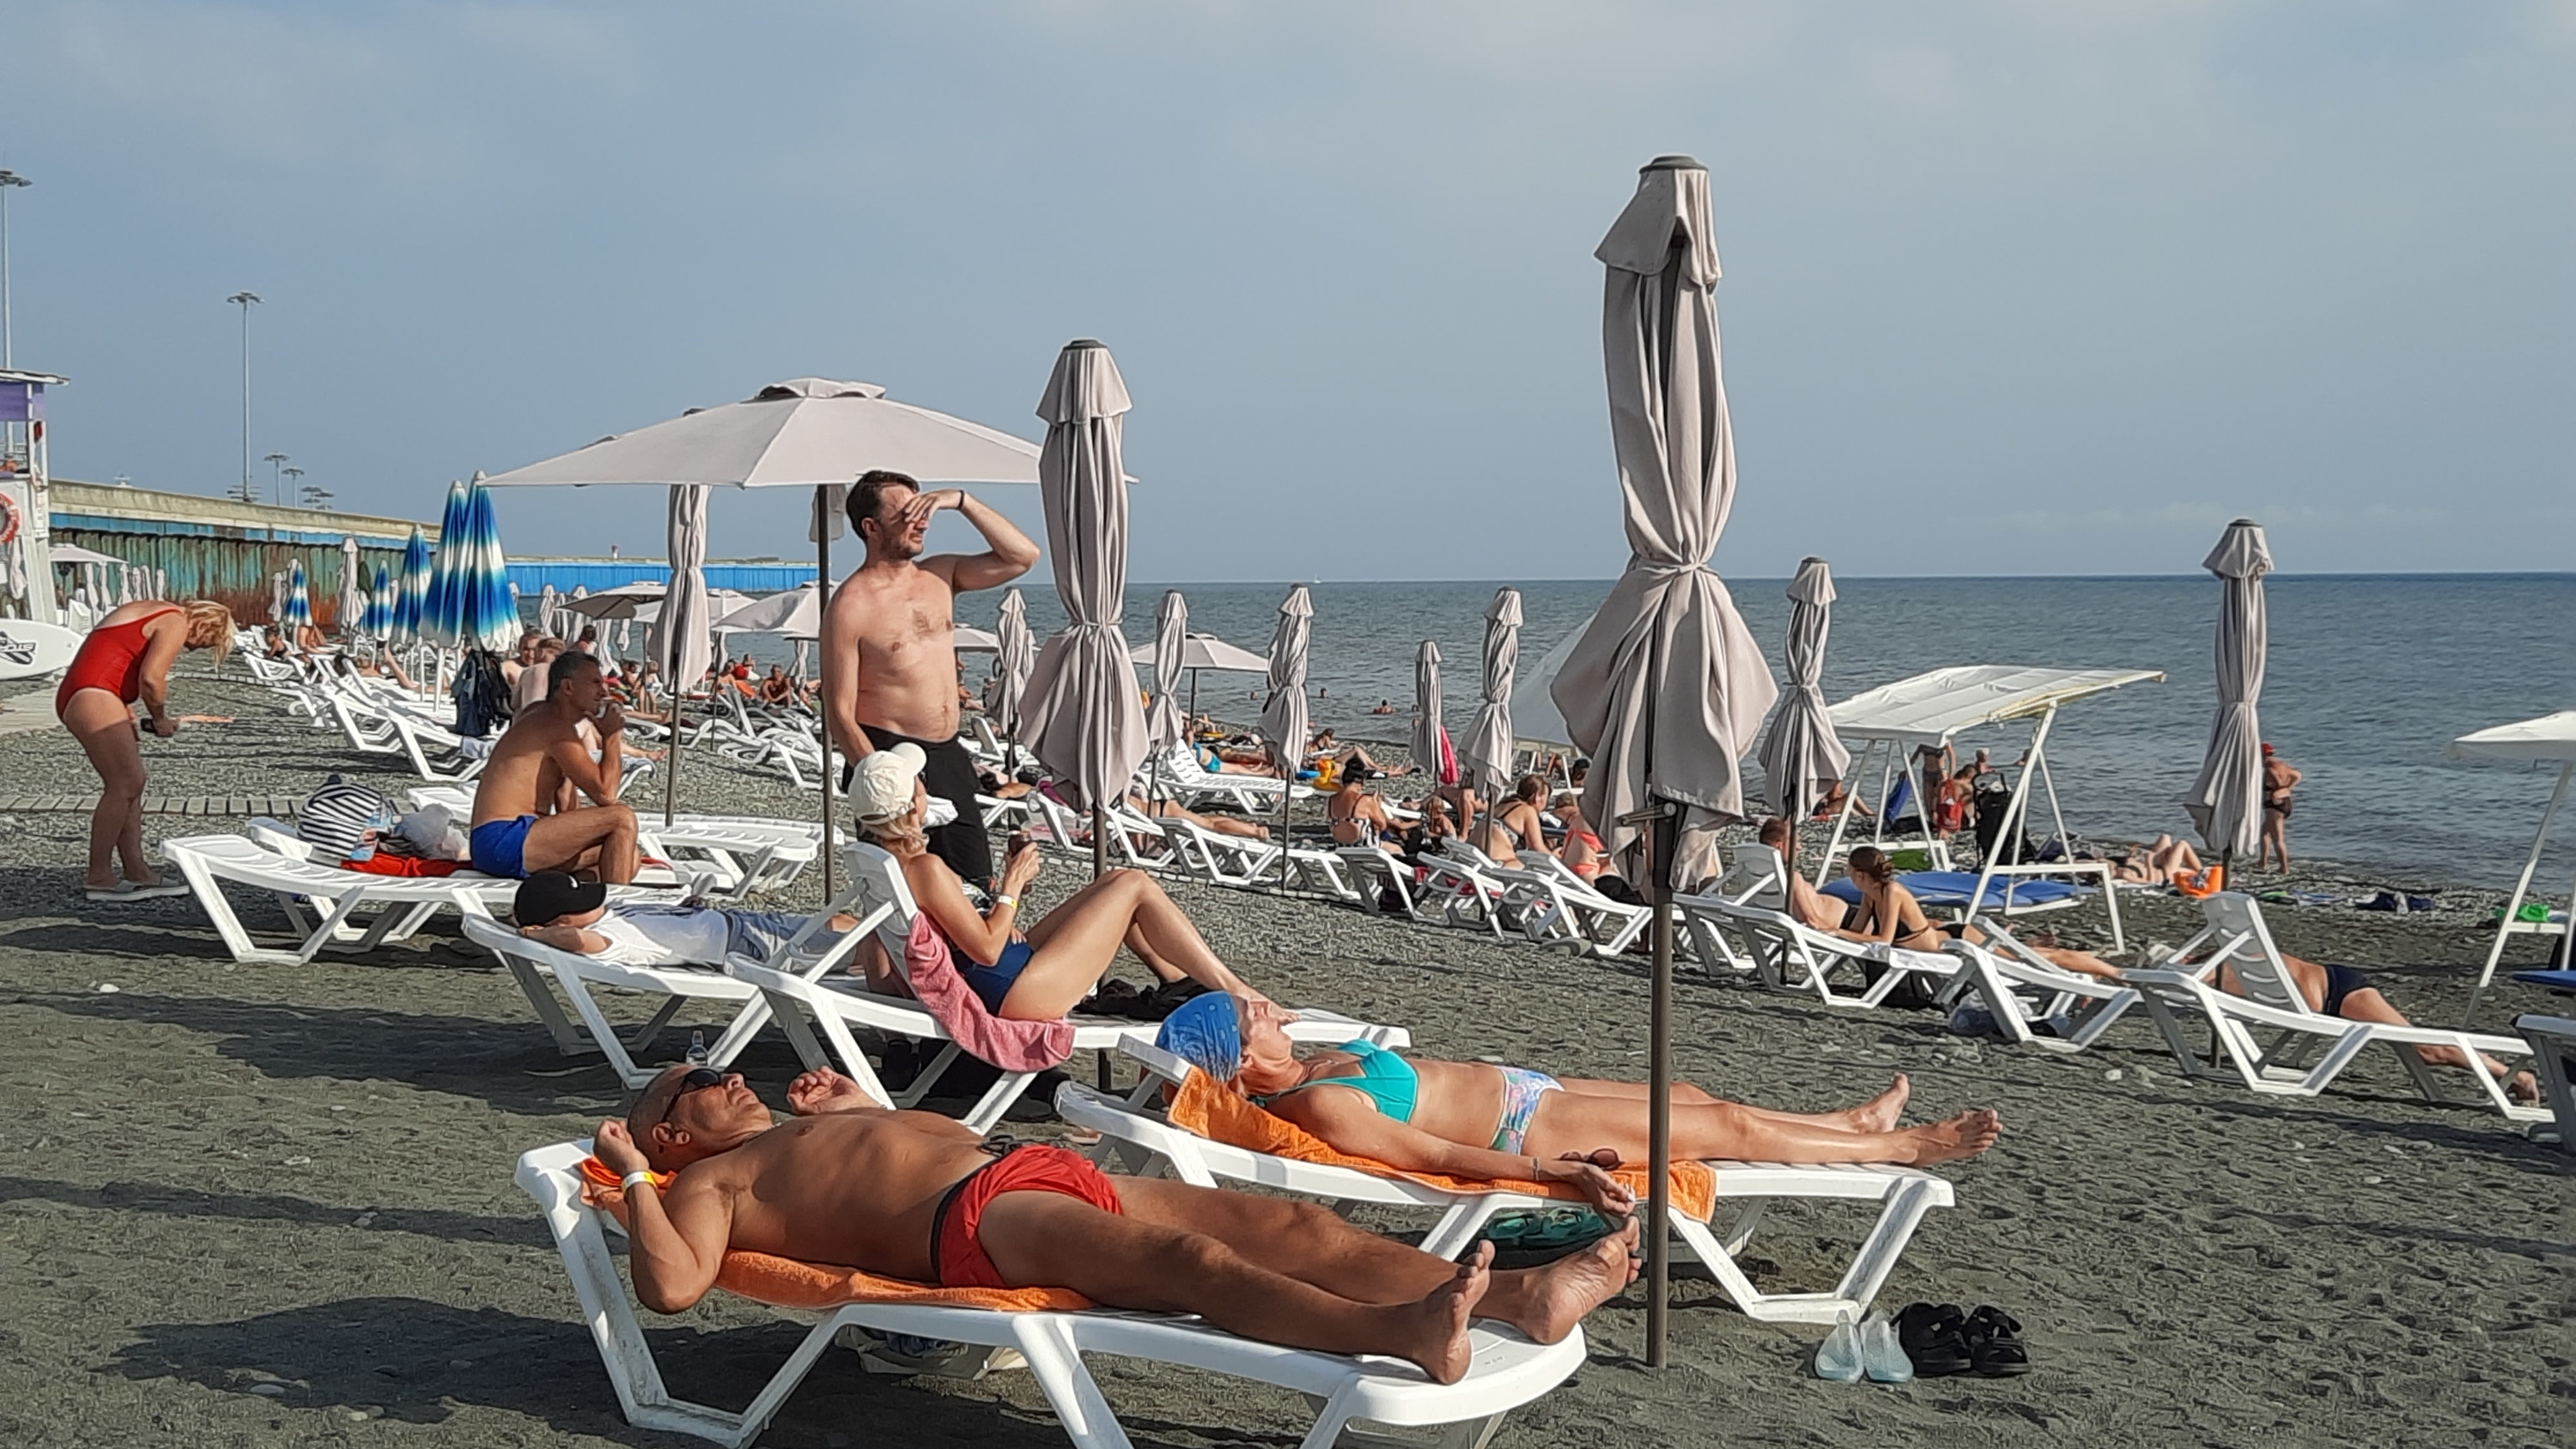 Eroscen. Сочи пляж. Пляж Солнечный Сочи. Люди на пляже Сочи. Отдыхающие на пляже в Сочи.